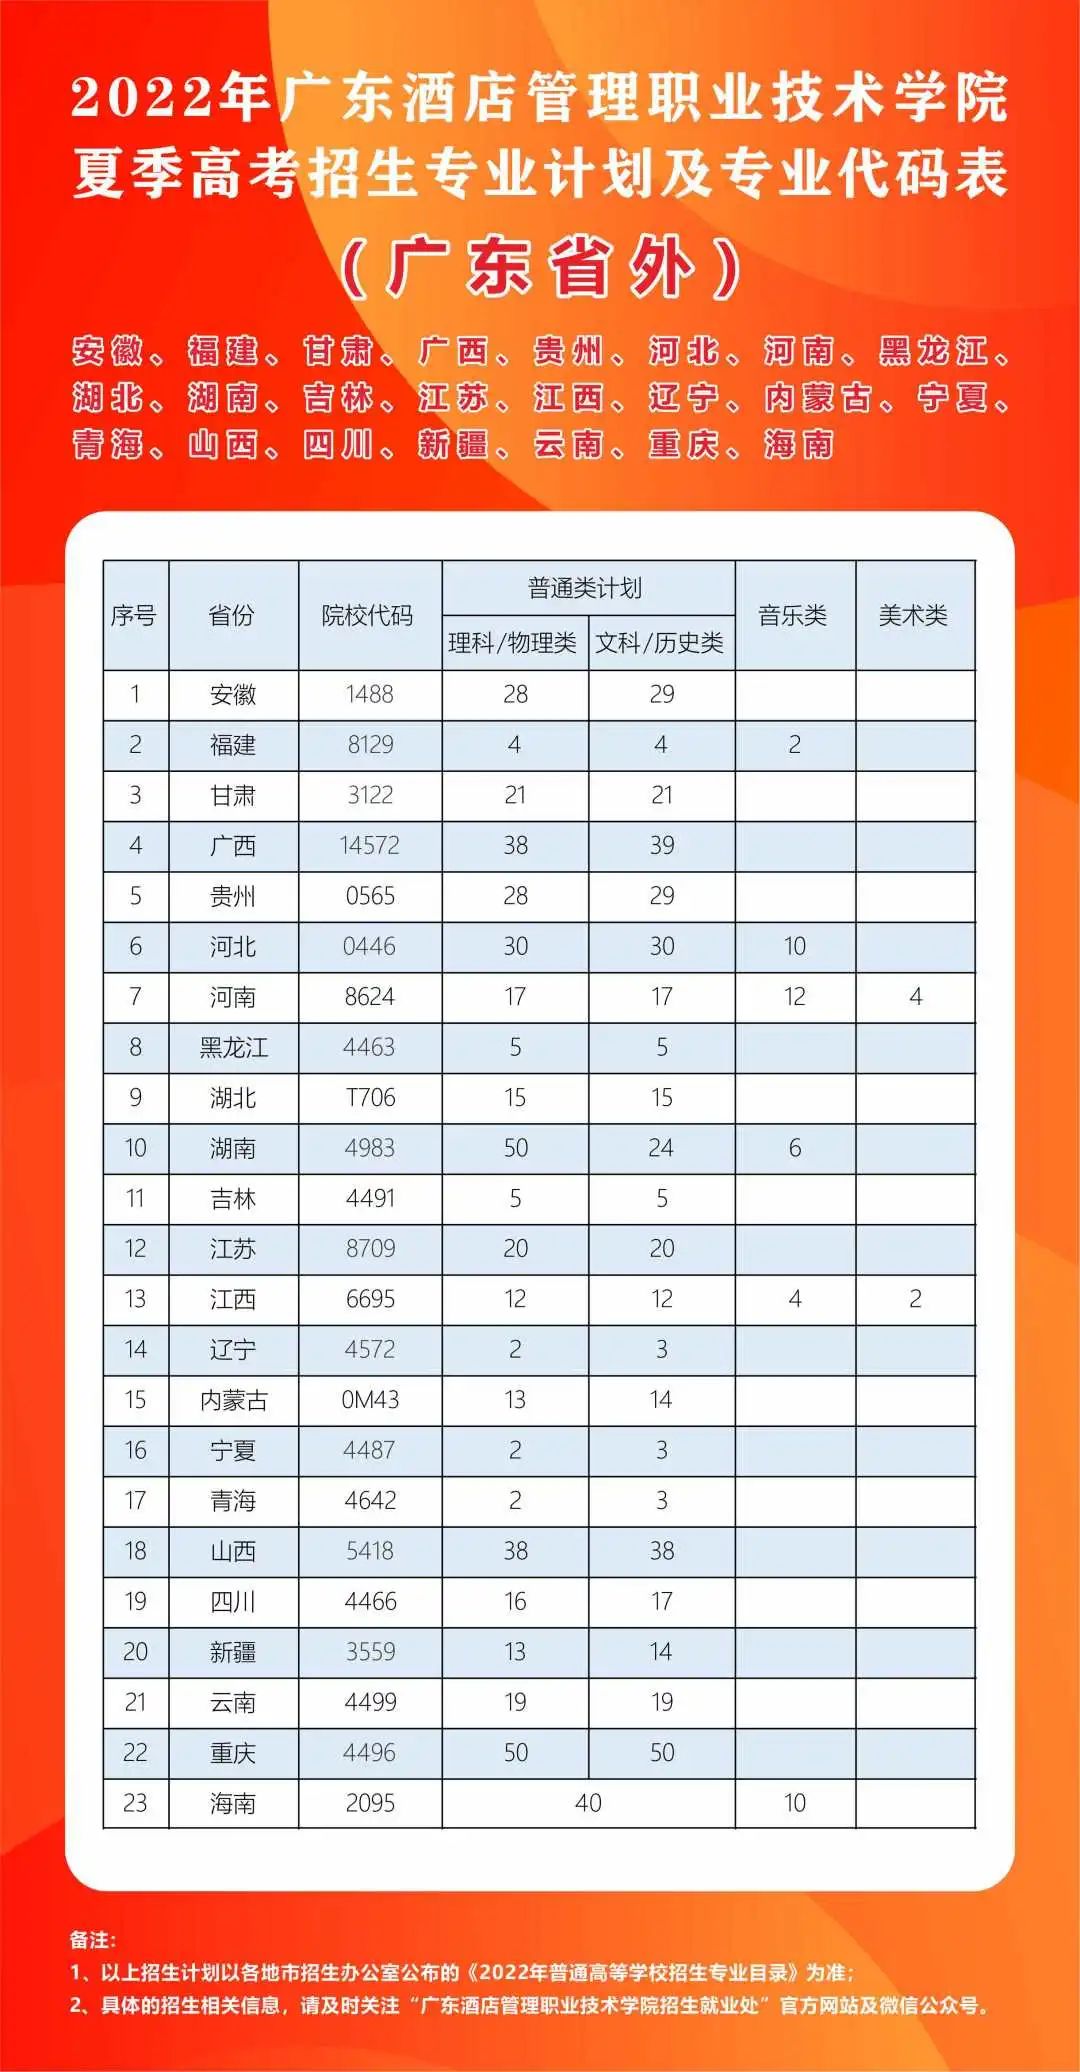 2022年广东酒店管理职业技术学院夏季高考招生专业计划及专业代码表